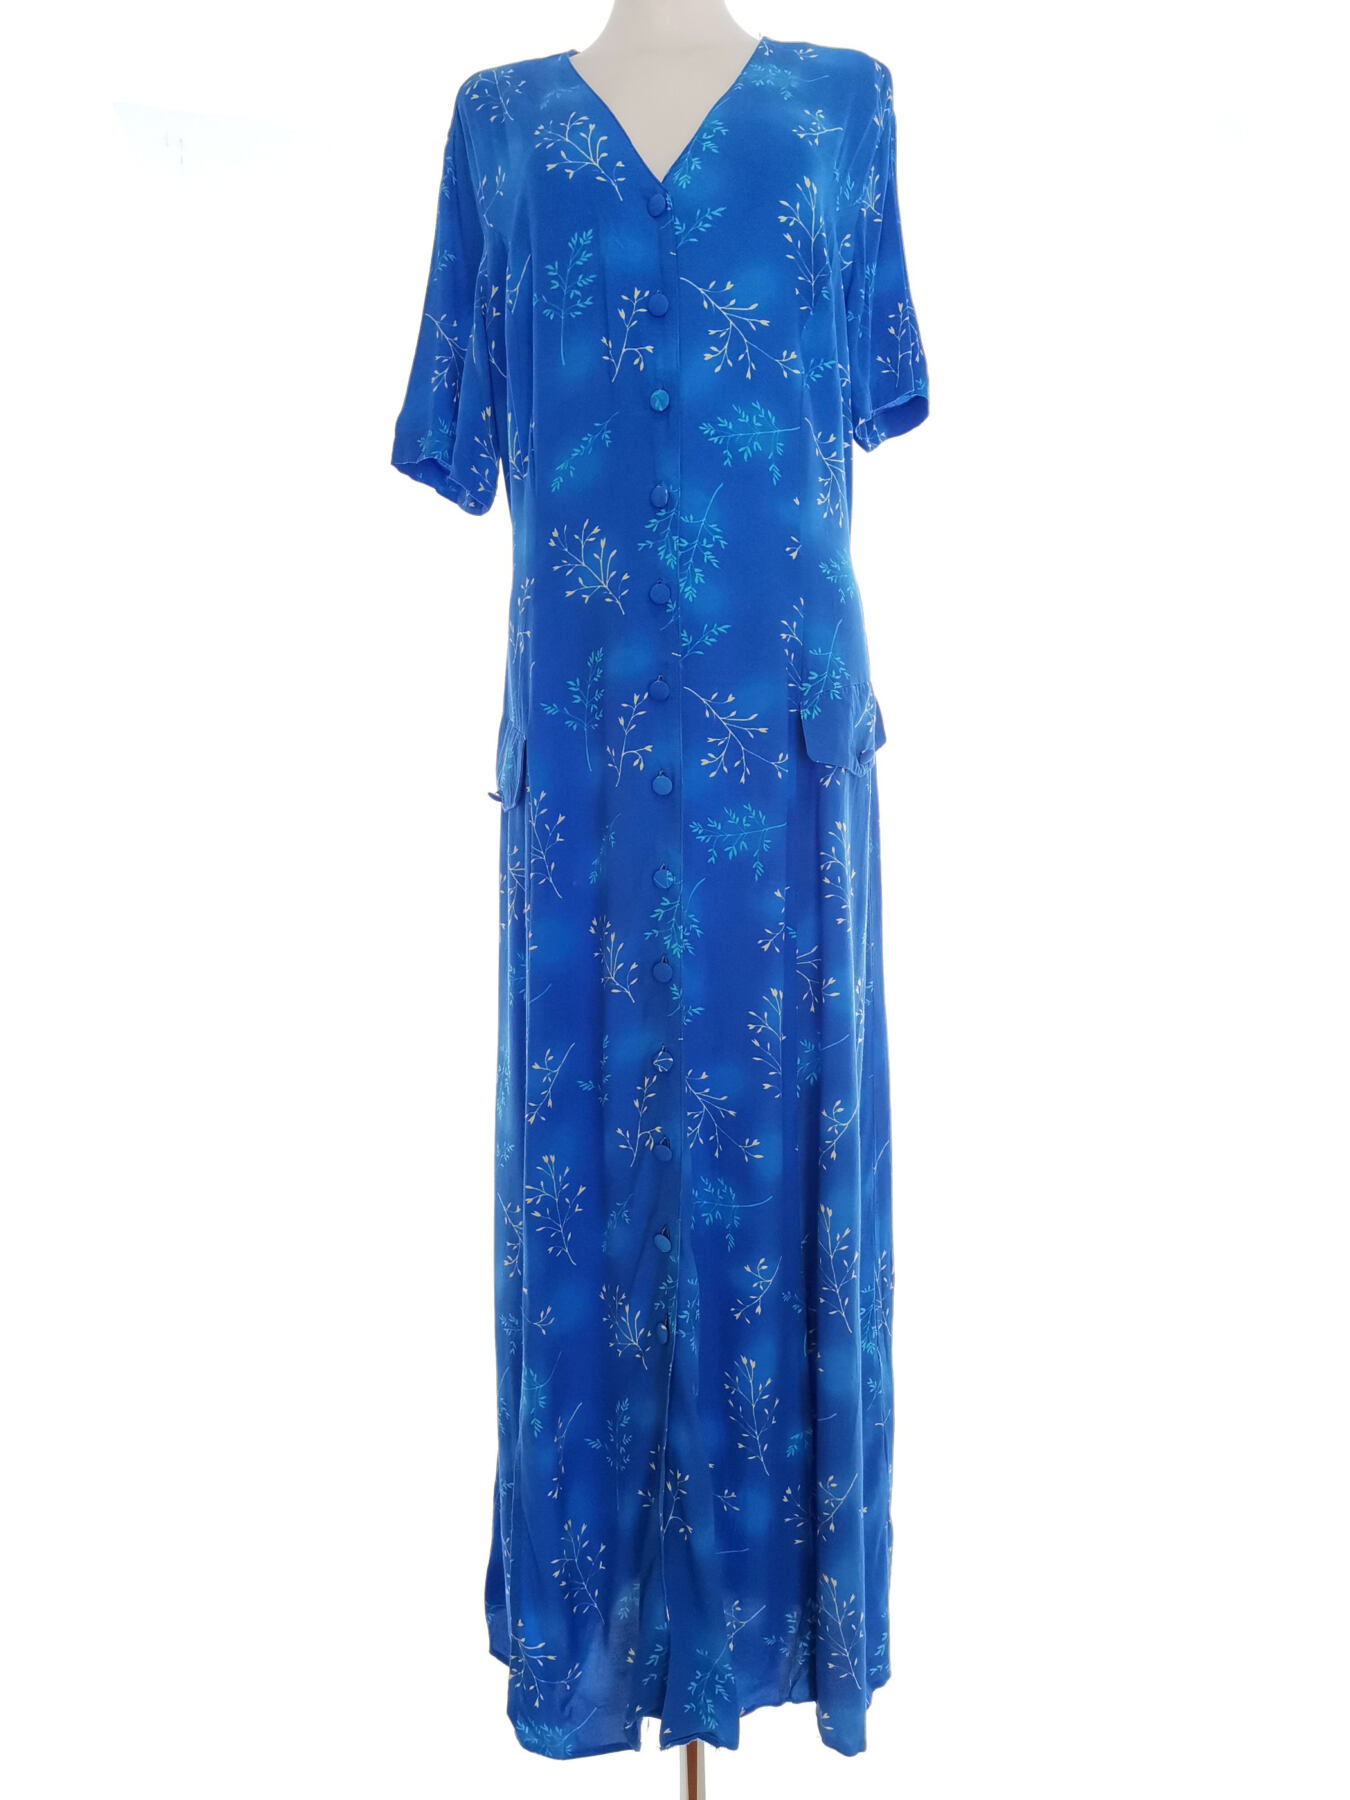 Vintage Rozmiar 18 (46) Kolor Niebieski W serek Sukienka Koszulowa Krótki rękaw Długa Materiał Wiskoza 100%